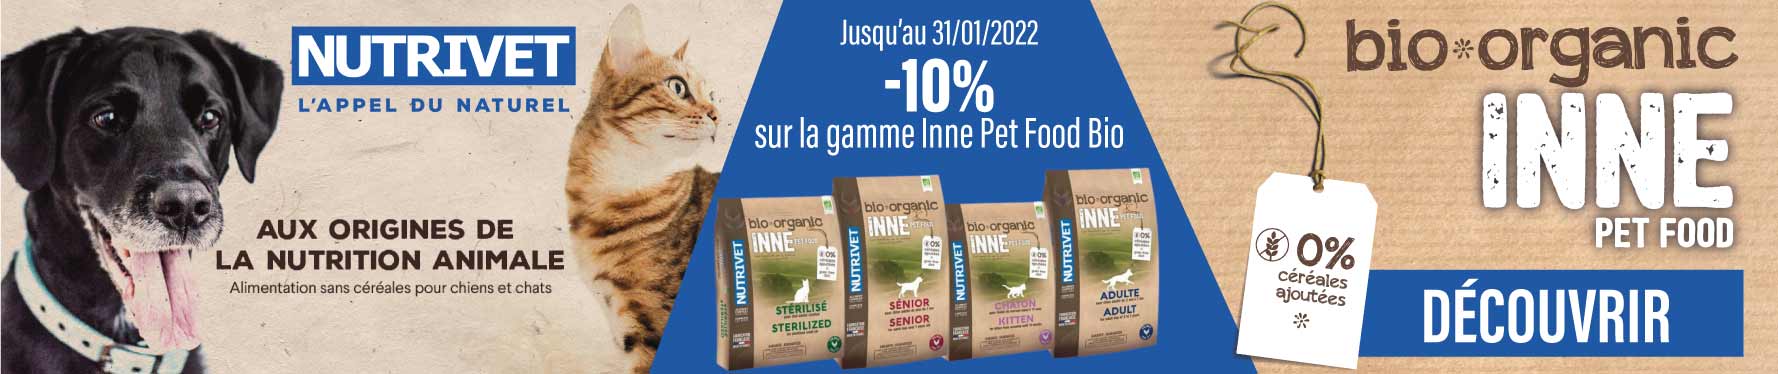 Profitez de notre offre sur la gamme INNE Petfood Bio